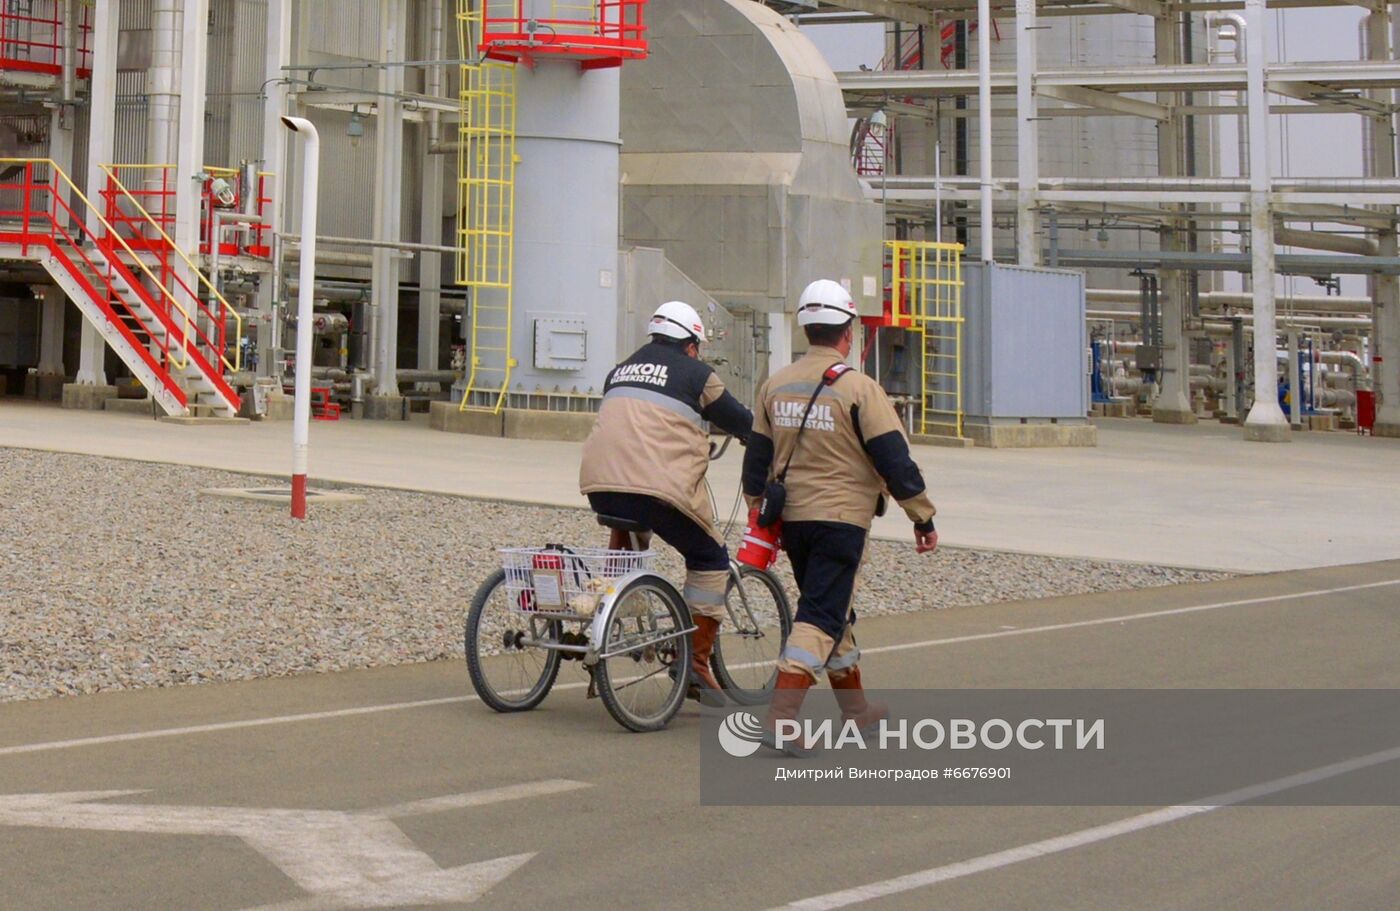 Кандымский газоперерабатывающий комплекс в Узбекистане